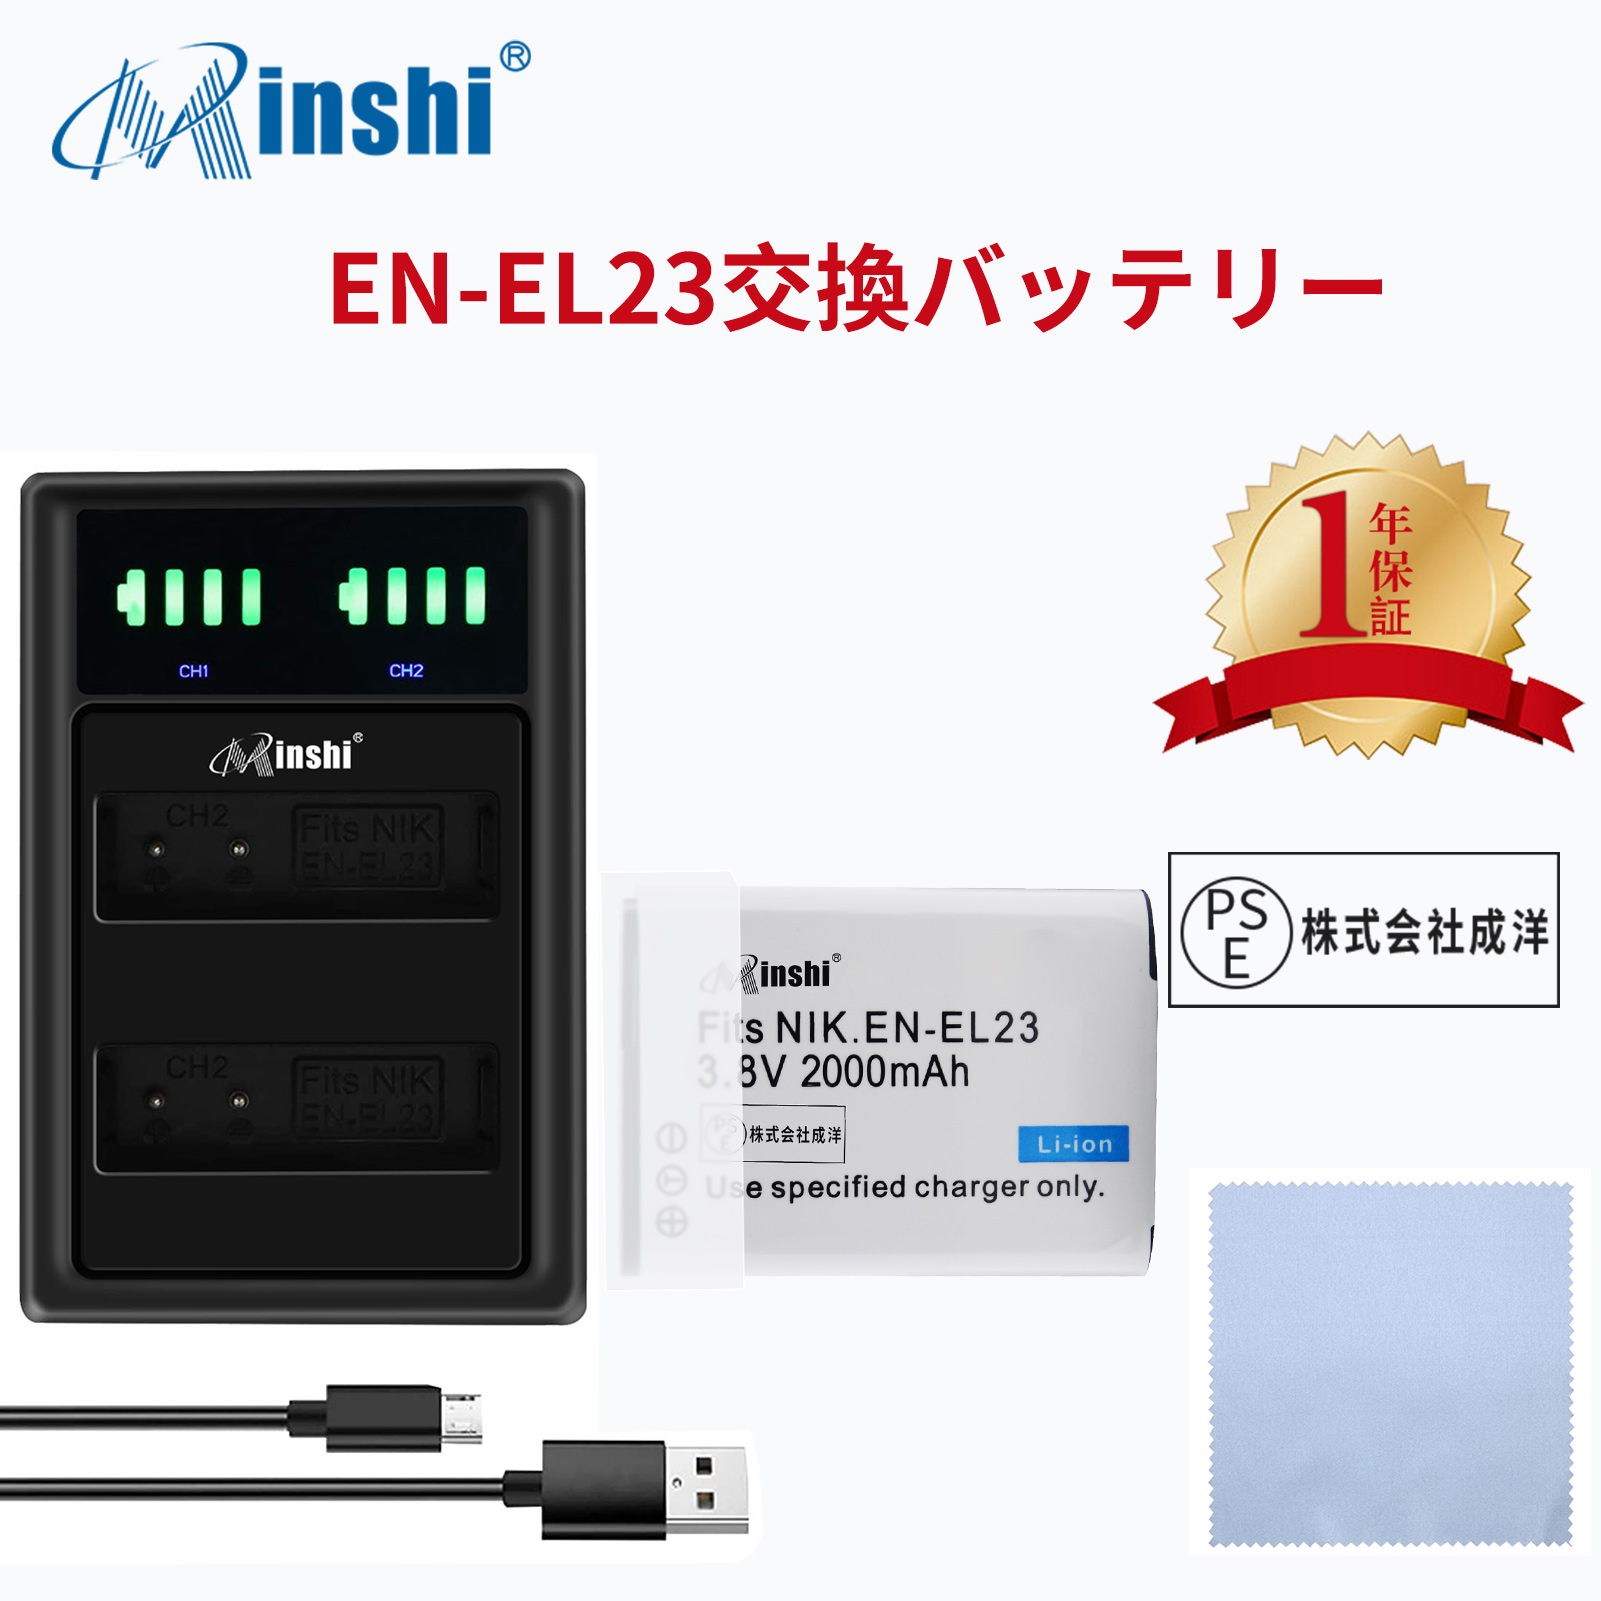 【セット】NIKON  B700 1D300 対応 EN-EL23 互換バッテリー 2000mAh Coolpix P600 P900 高品質EN-EL23交換用バッテリー